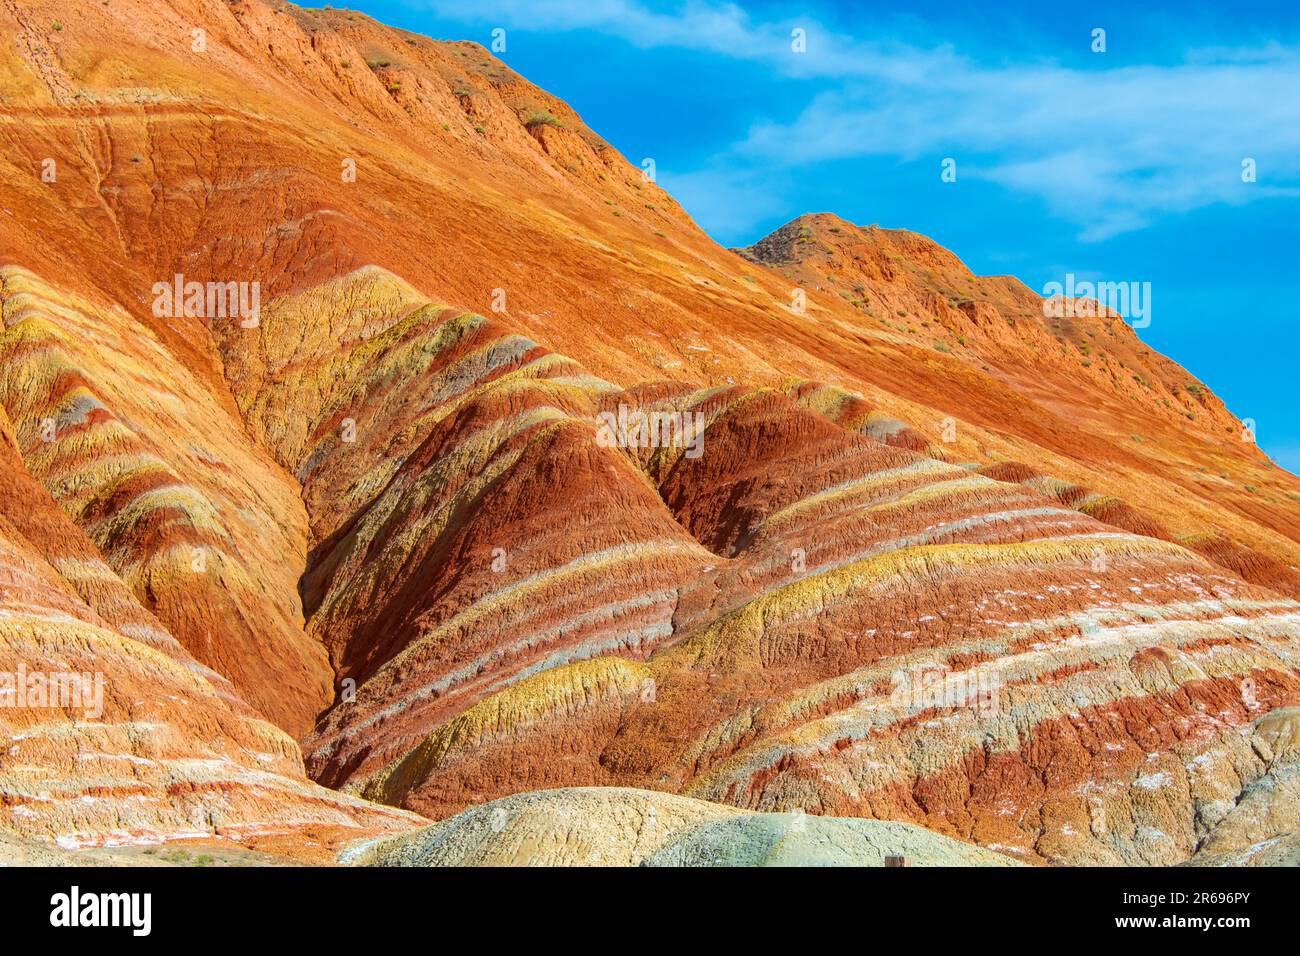 Las montañas Rainbow de China dentro del Parque Geológico Zhangye Danxia Landform son una maravilla geológica del mundo, estas famosas montañas chinas Foto de stock